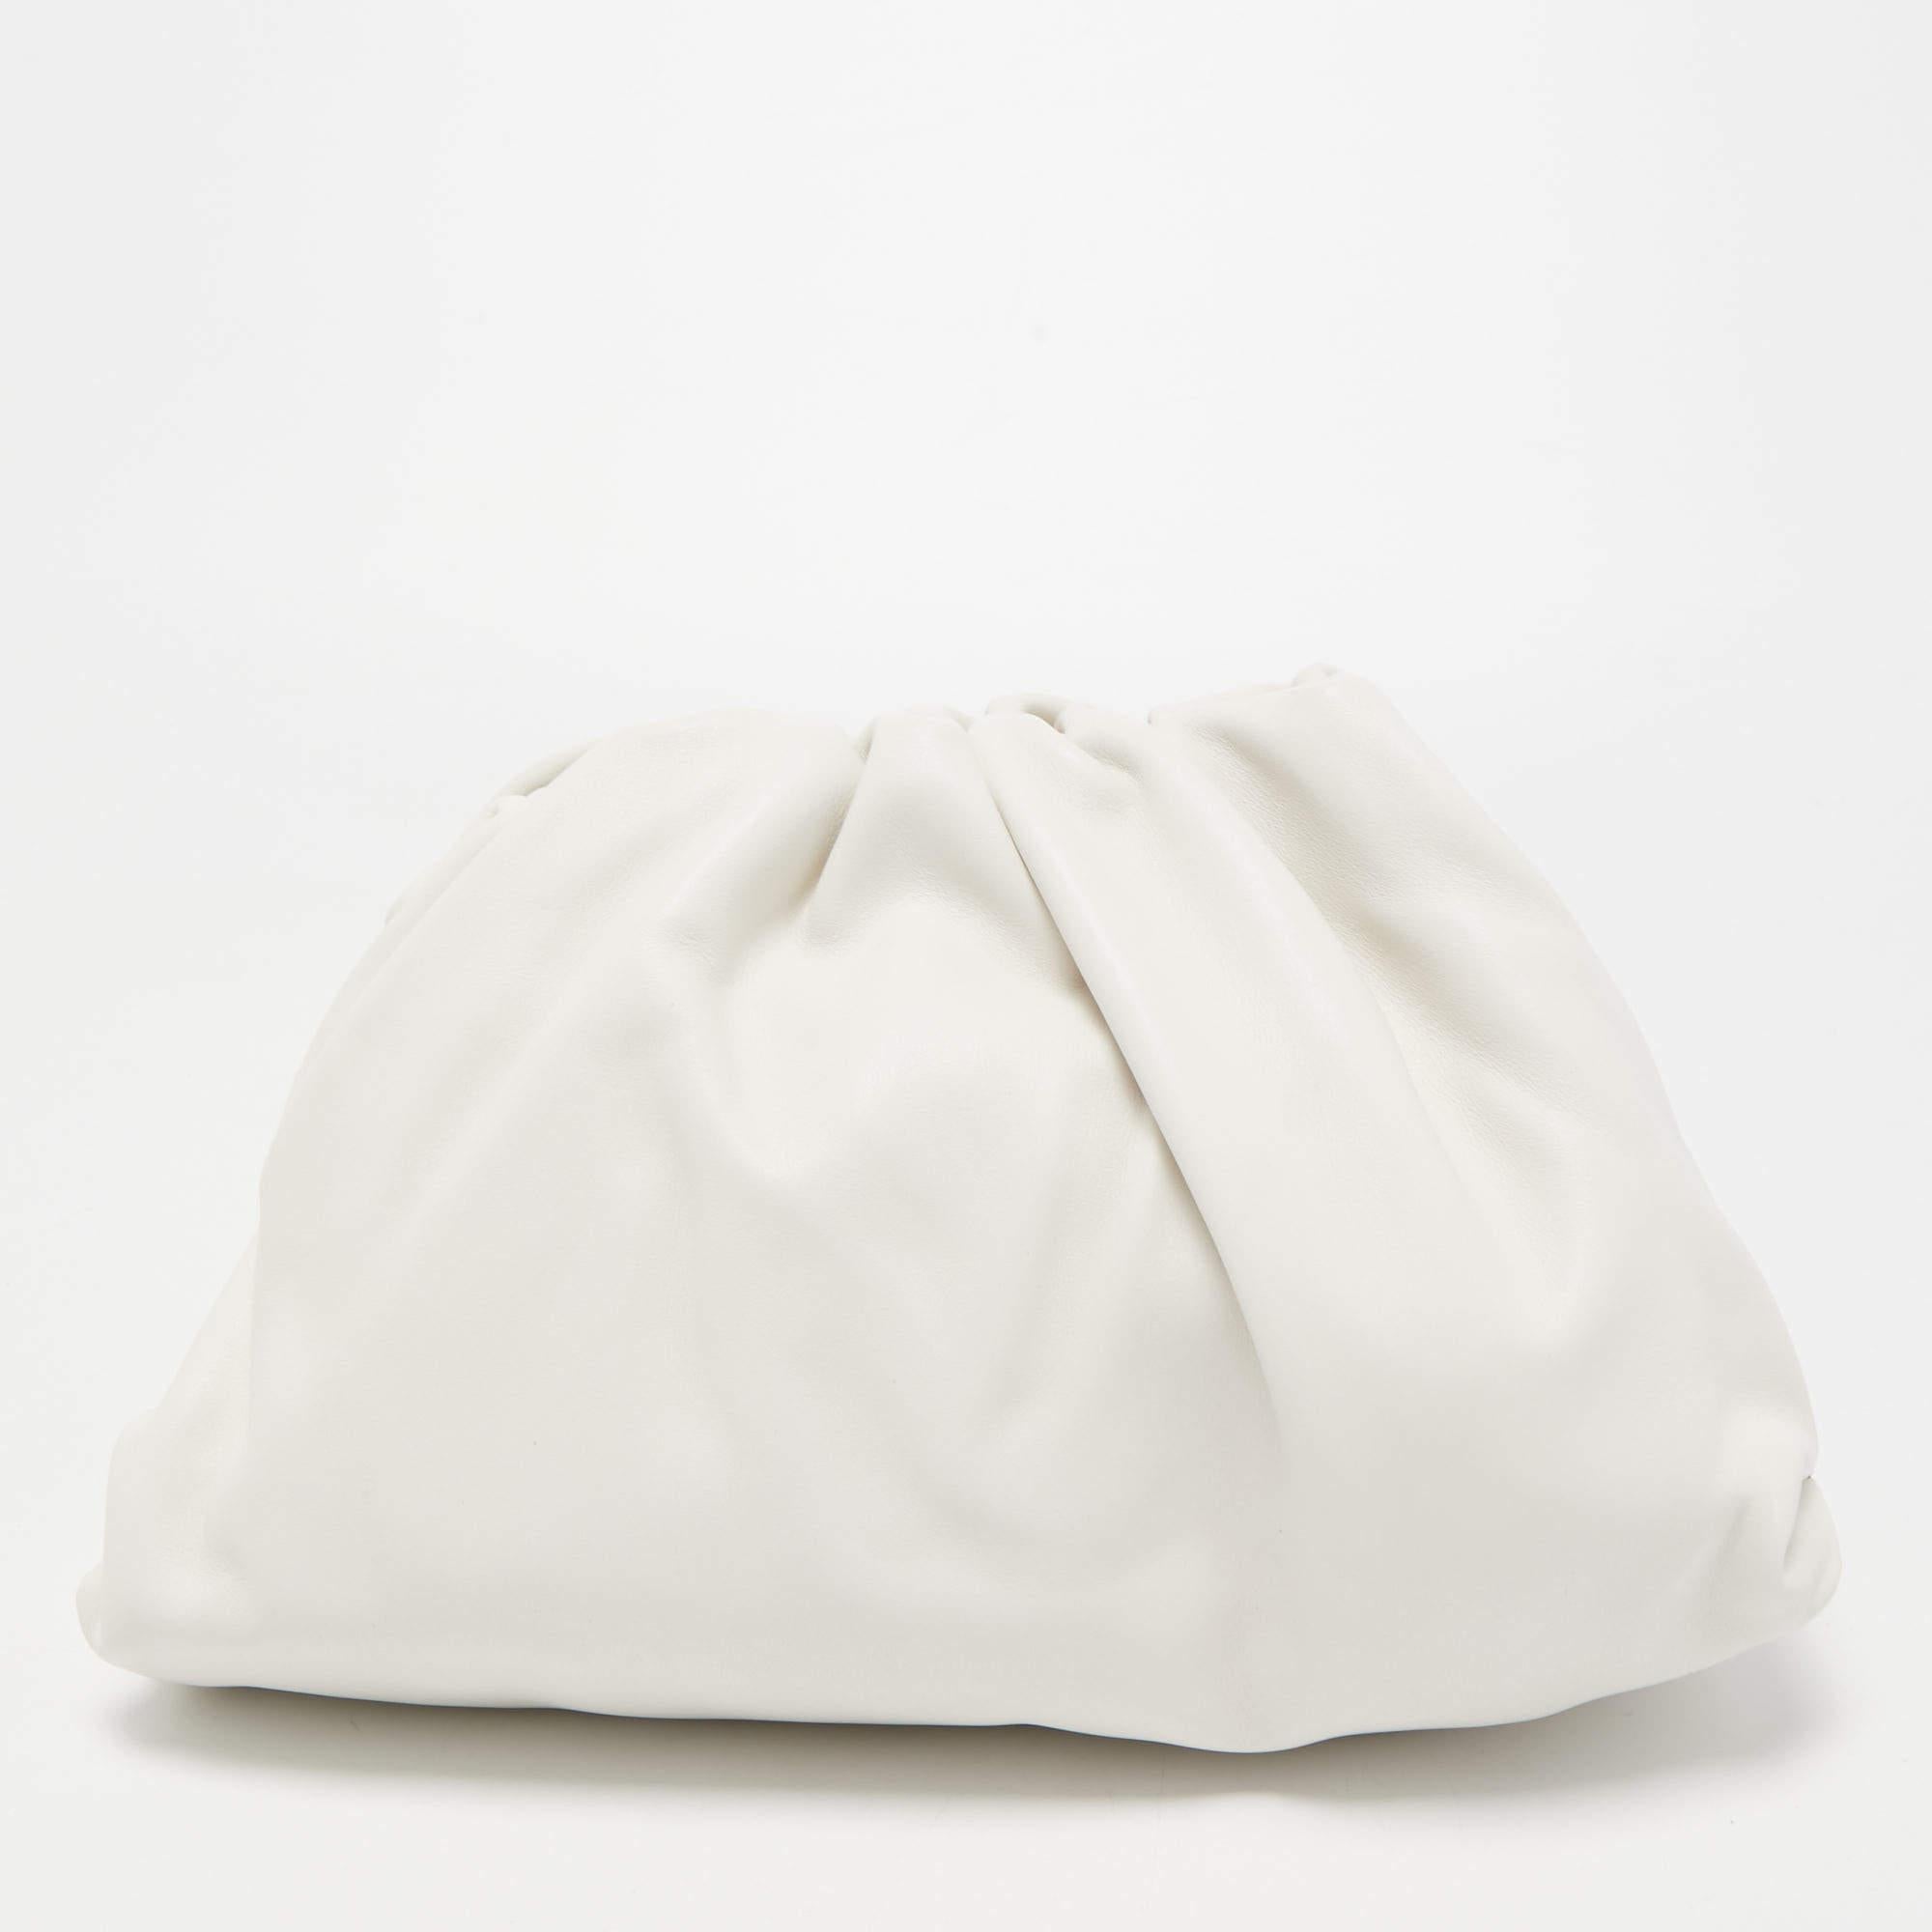 Un sac qui a pris d'assaut le monde de la mode, la pochette The Pouch de Bottega Veneta reflète les choix de style distinctifs de Daniel Lee. Cette version est habilement fabriquée en cuir dans une silhouette déstructurée qui offre beaucoup